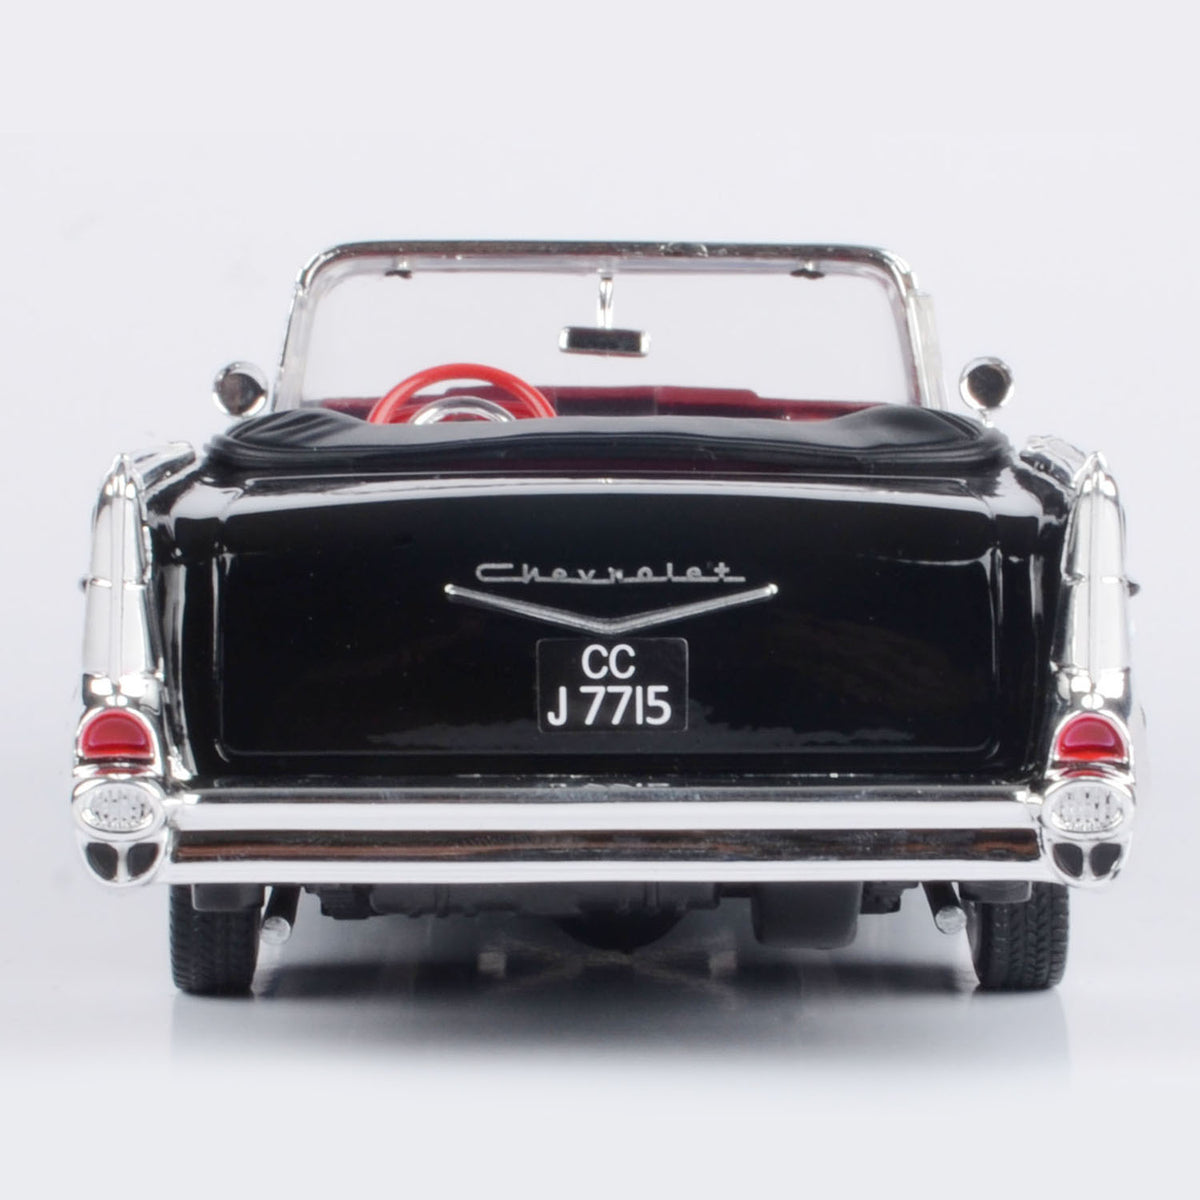 James Bond Chevy Bel Air Modellauto - Dr. No Edition - Von Motormax